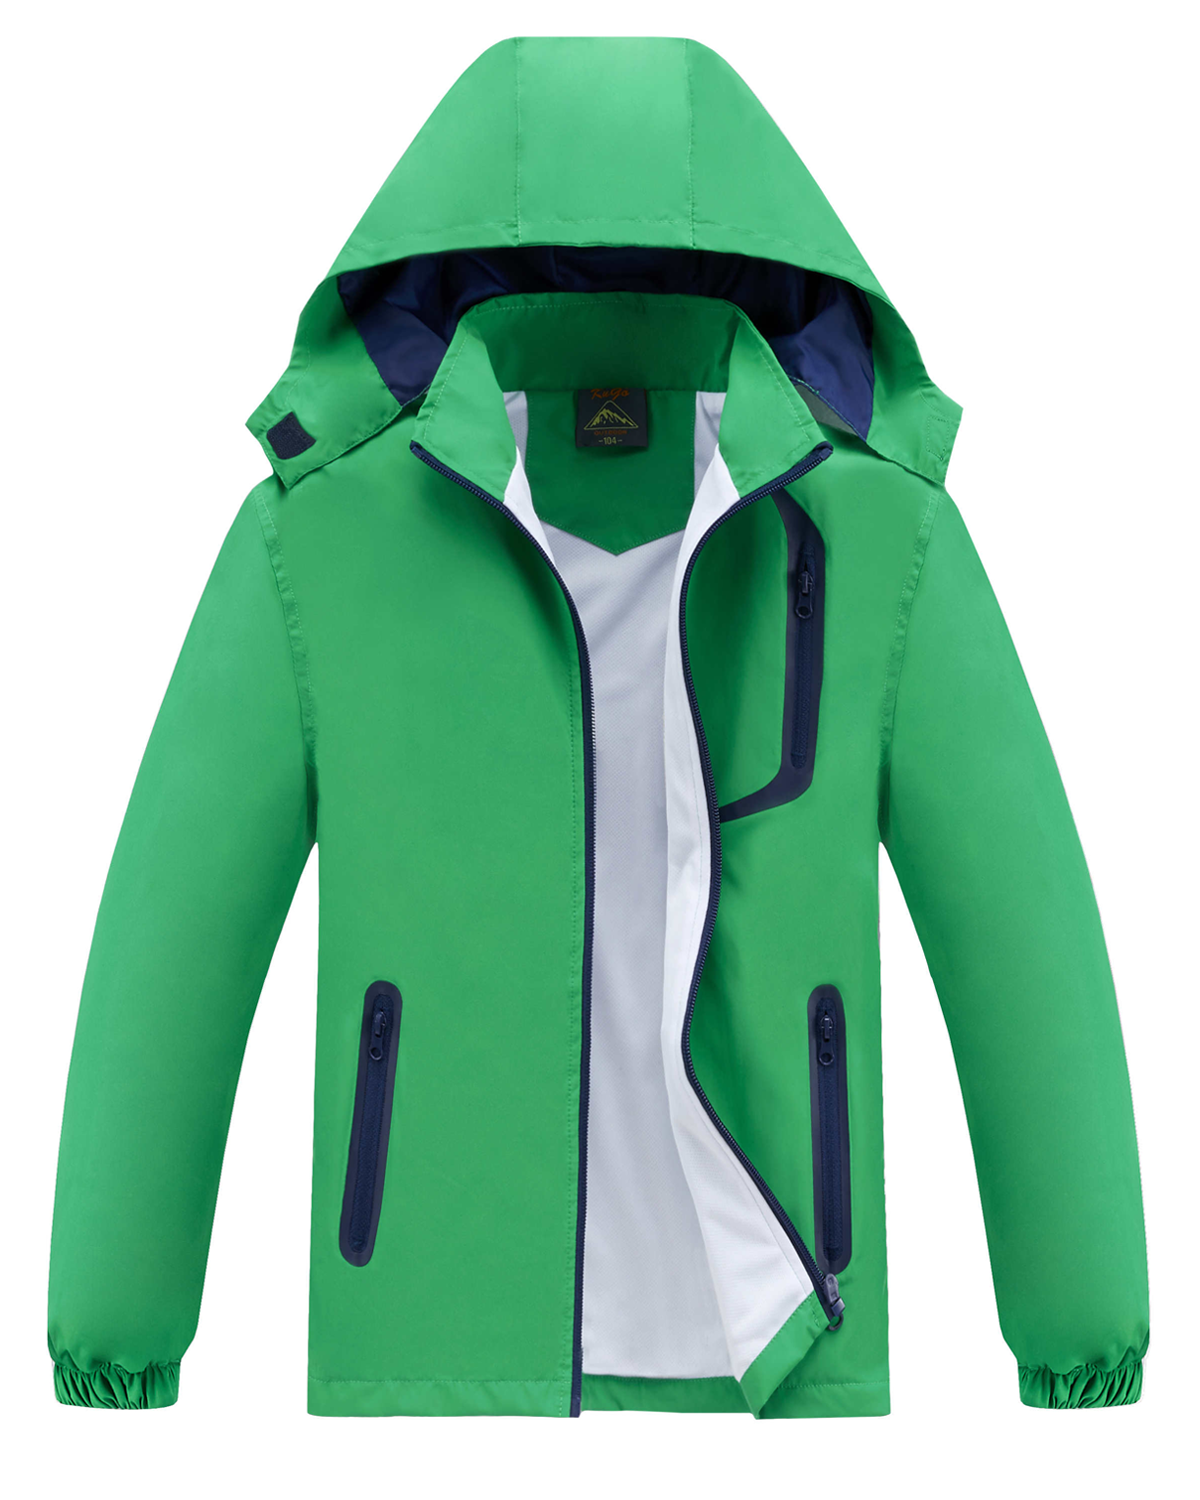 Chlapecká jarní, podzimní bunda - KUGO B2868, zelená Barva: Zelená, Velikost: 104